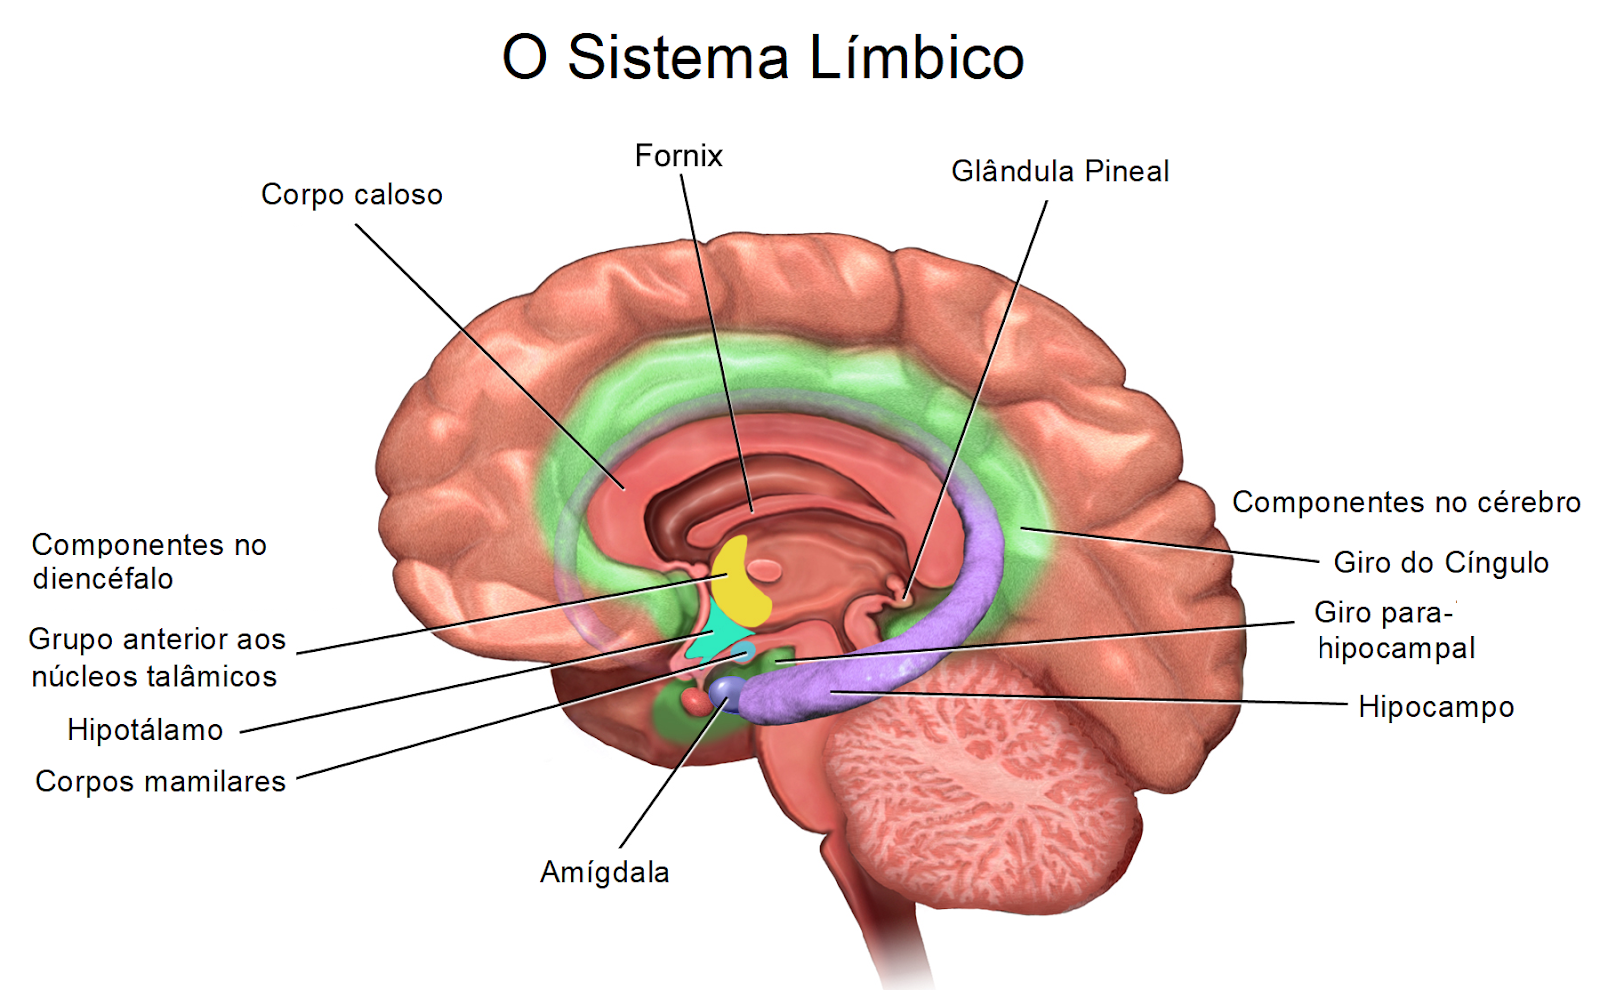 Imagem esquemática do sistema límbico e seus órgãos no cérebro, que provocam emoções na arte.